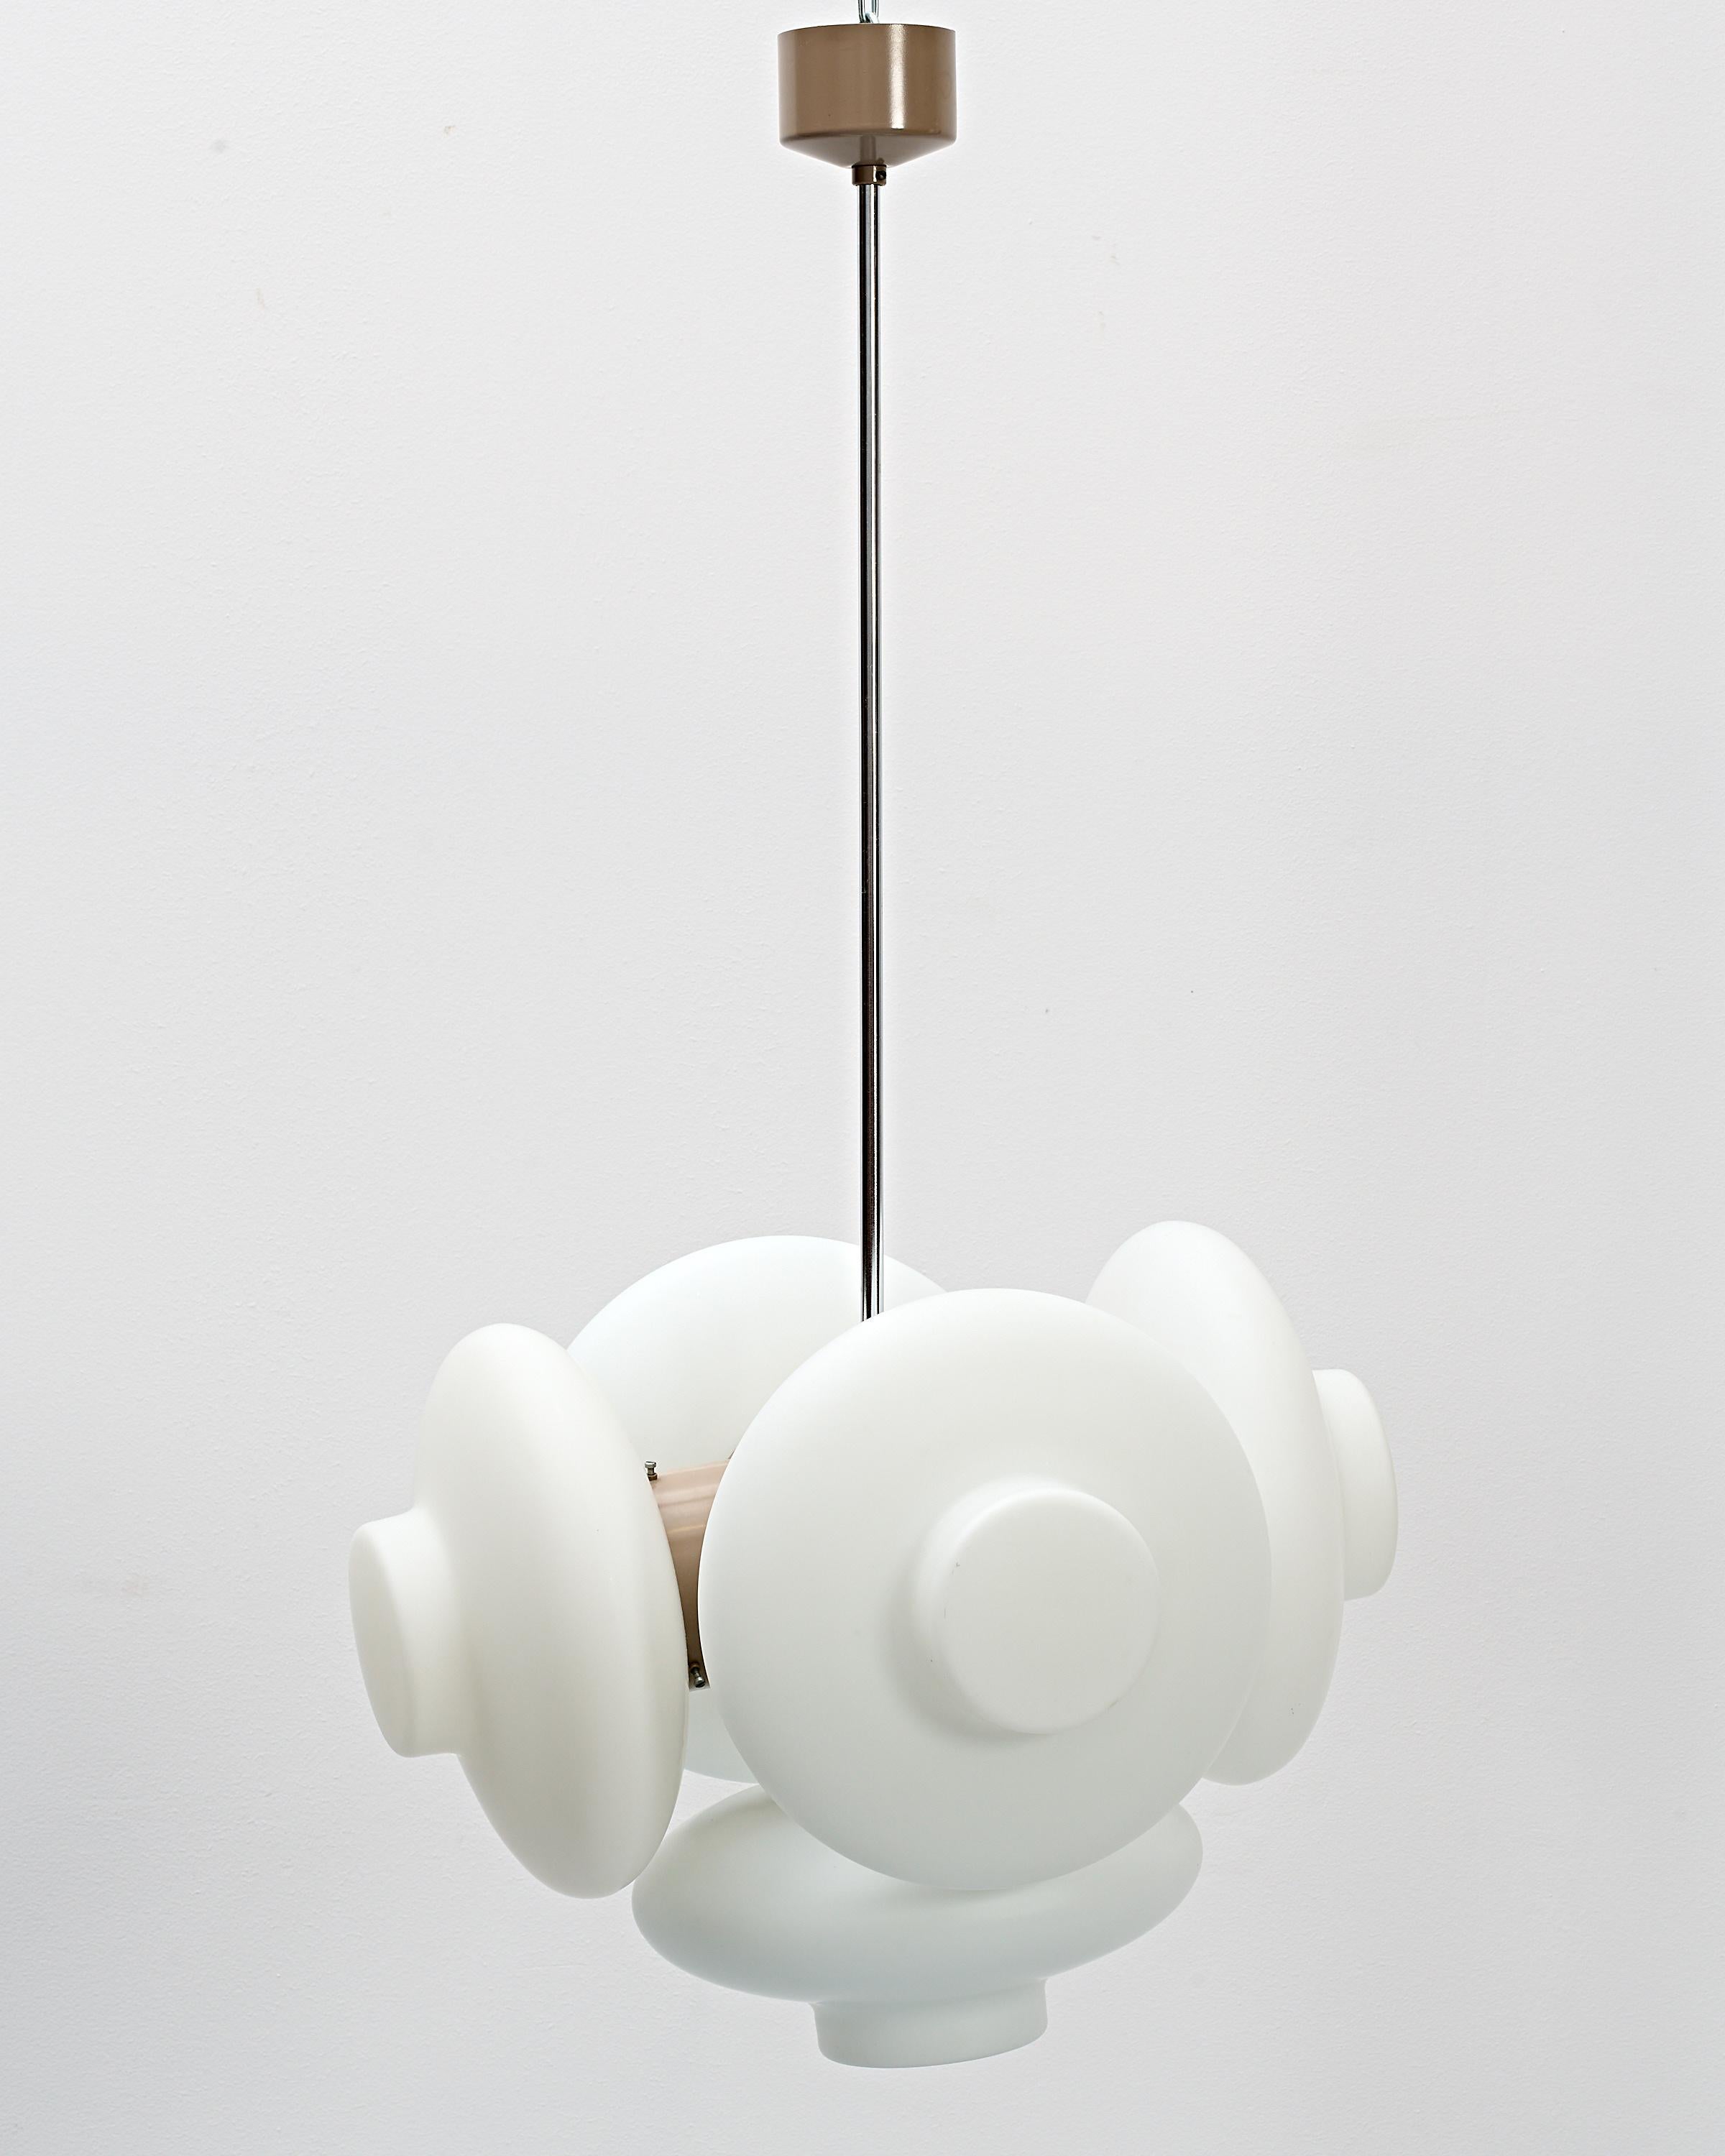 Une suspension unique produite par Napako, conçue par Josef Hůrka, un concepteur d'éclairage renommé, au cours des années 60.

Cinq abat-jour ronds en verre opalin, 20 cm de diamètre.

Un effet de lumière diffuse.

